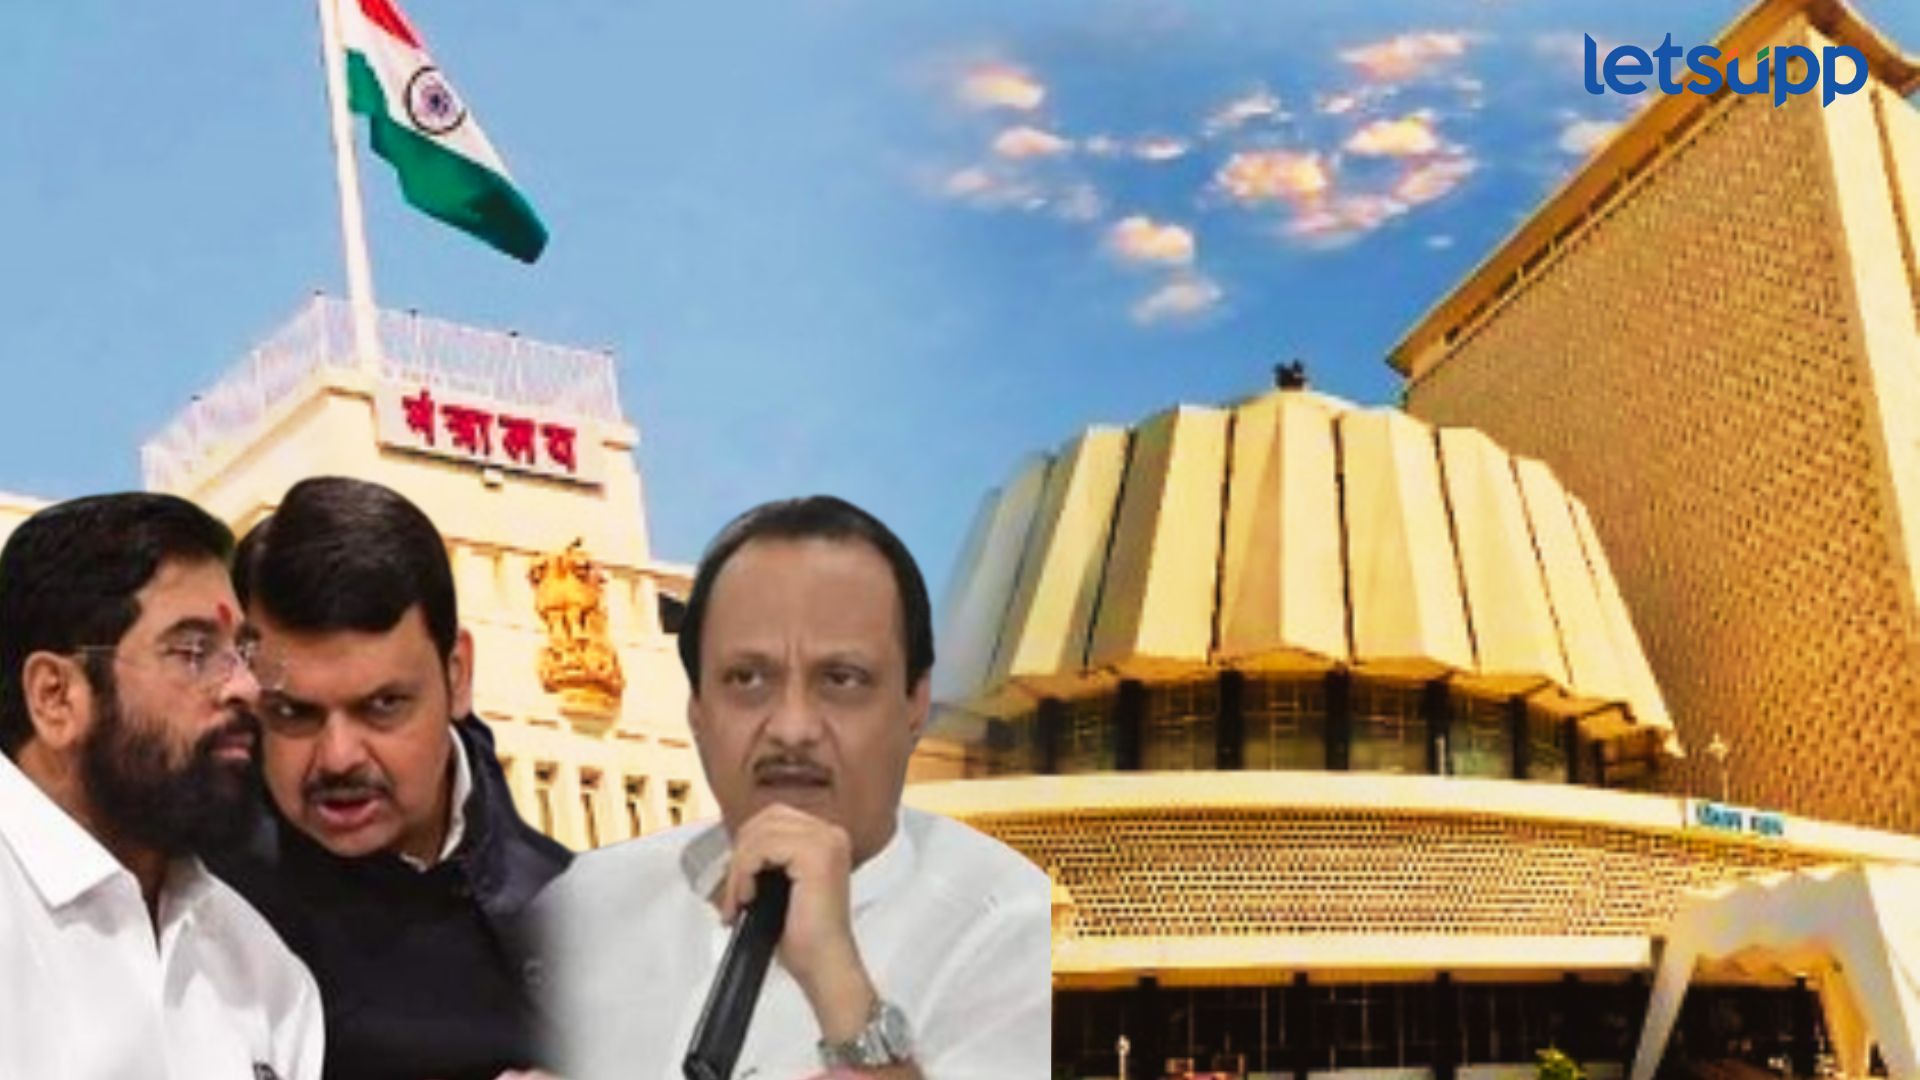 Maharashtra Politics : लोकसभेनंतर फासे फिरले; राज्यातील आमदारांना मंत्रिपदात ‘नो इंट्रेस्ट’